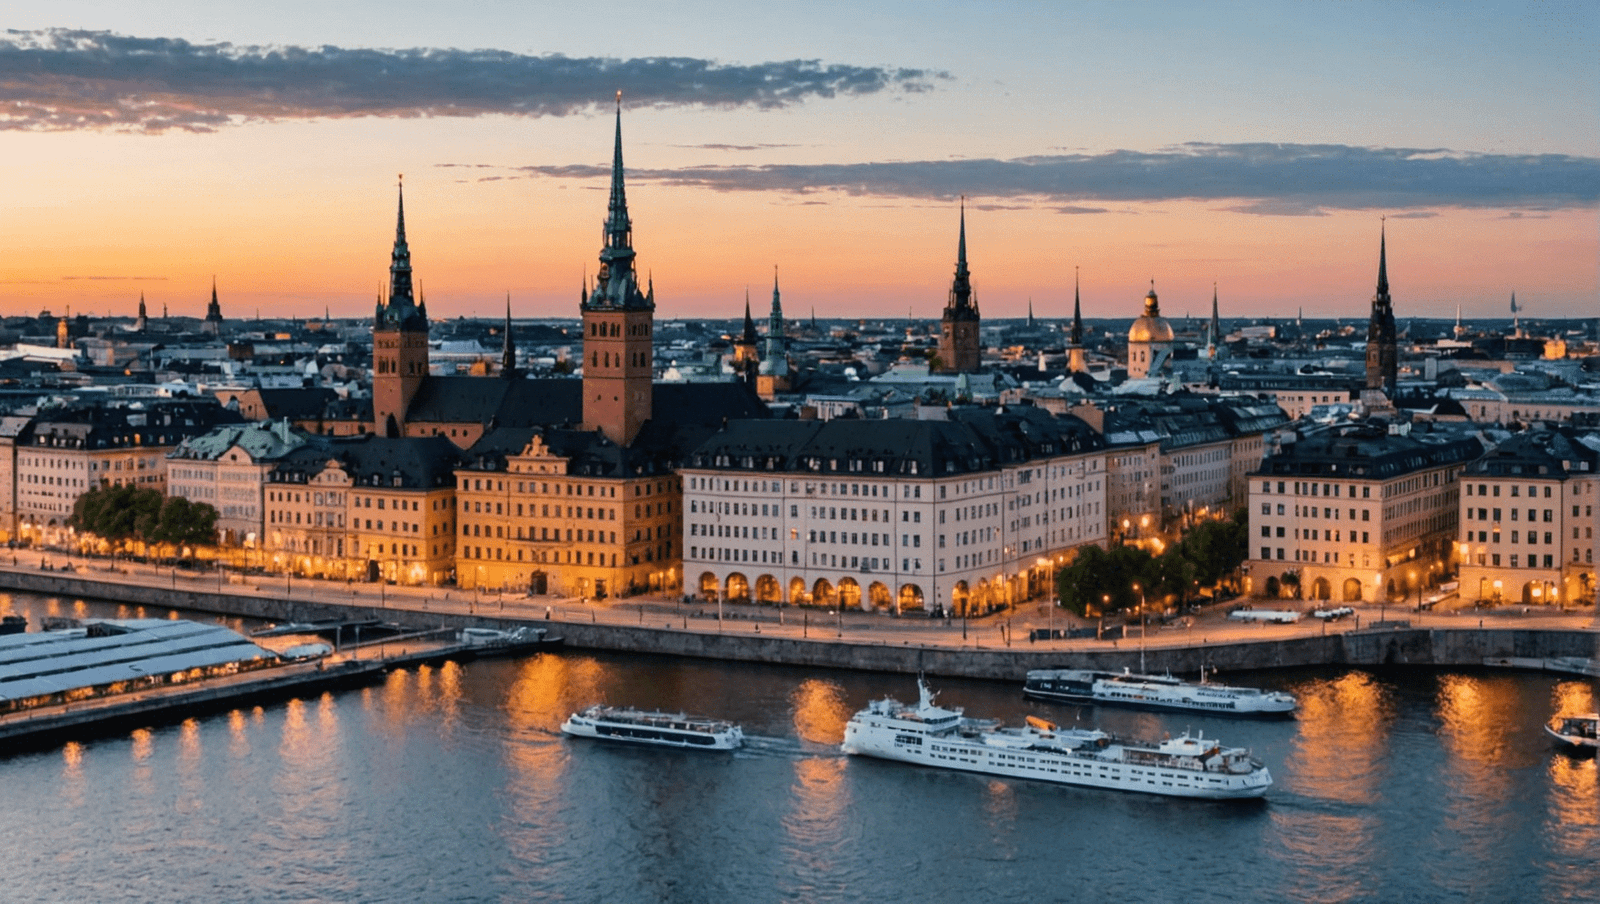 découvrez stockholm, la capitale suédoise, à travers ce guide de voyage ultime qui vous emmènera à la rencontre de ses trésors et de ses secrets. planifiez votre exploration et vivez une expérience inoubliable à stockholm.